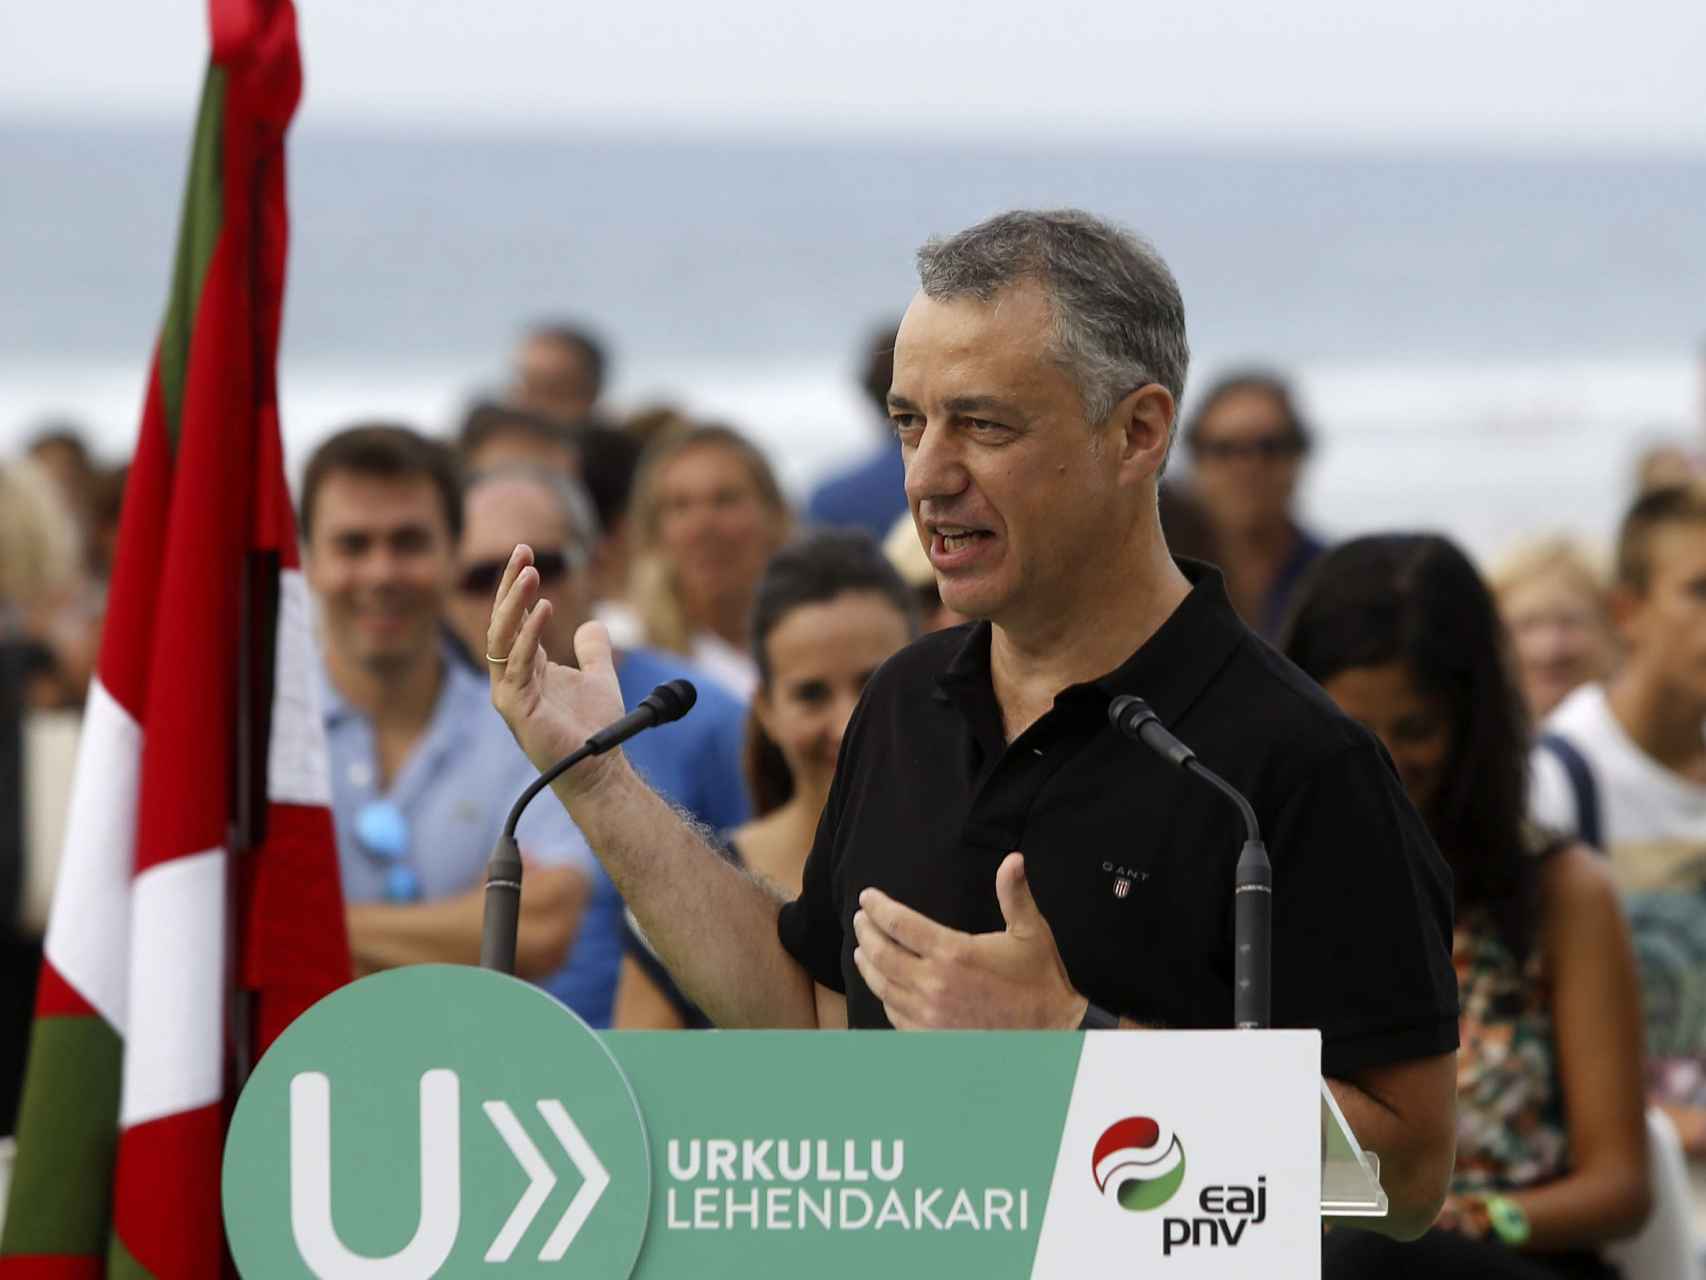 El lehendakari y candidato a la reelección por el PNV, Iñigo Urkullu.